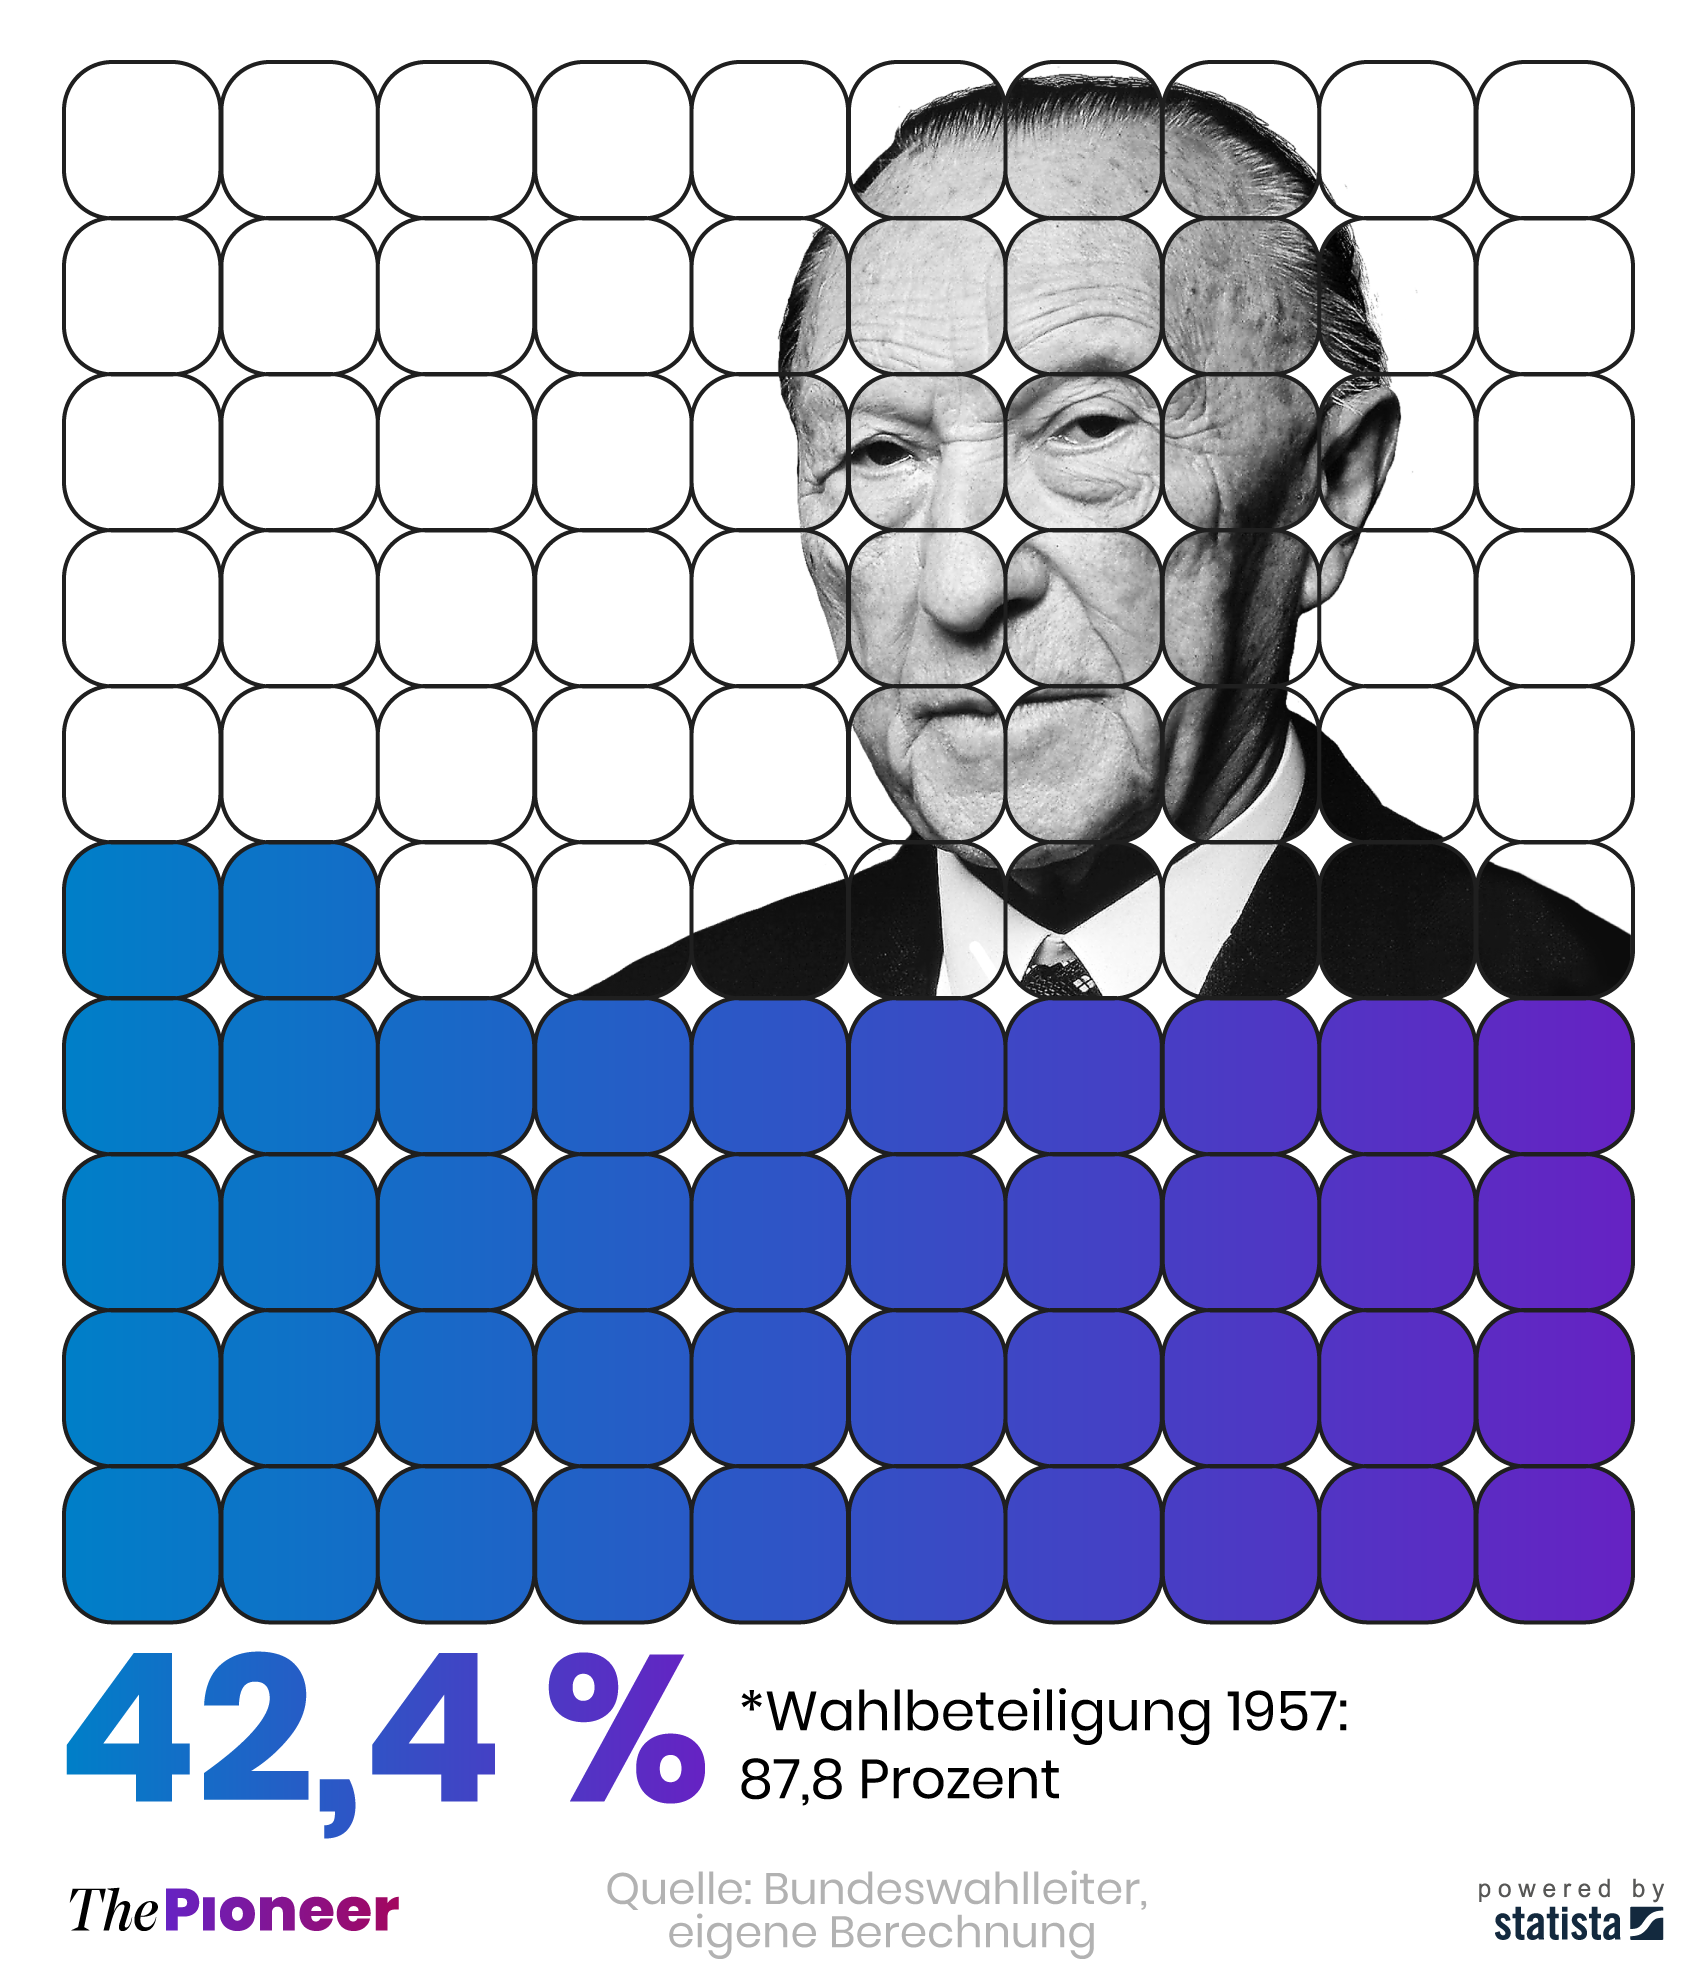 Bundestagswahlergebnis der Union zur Adenauer-Wahl 1957 unter Einbeziehung aller Wahlberechtigten*, in Prozent